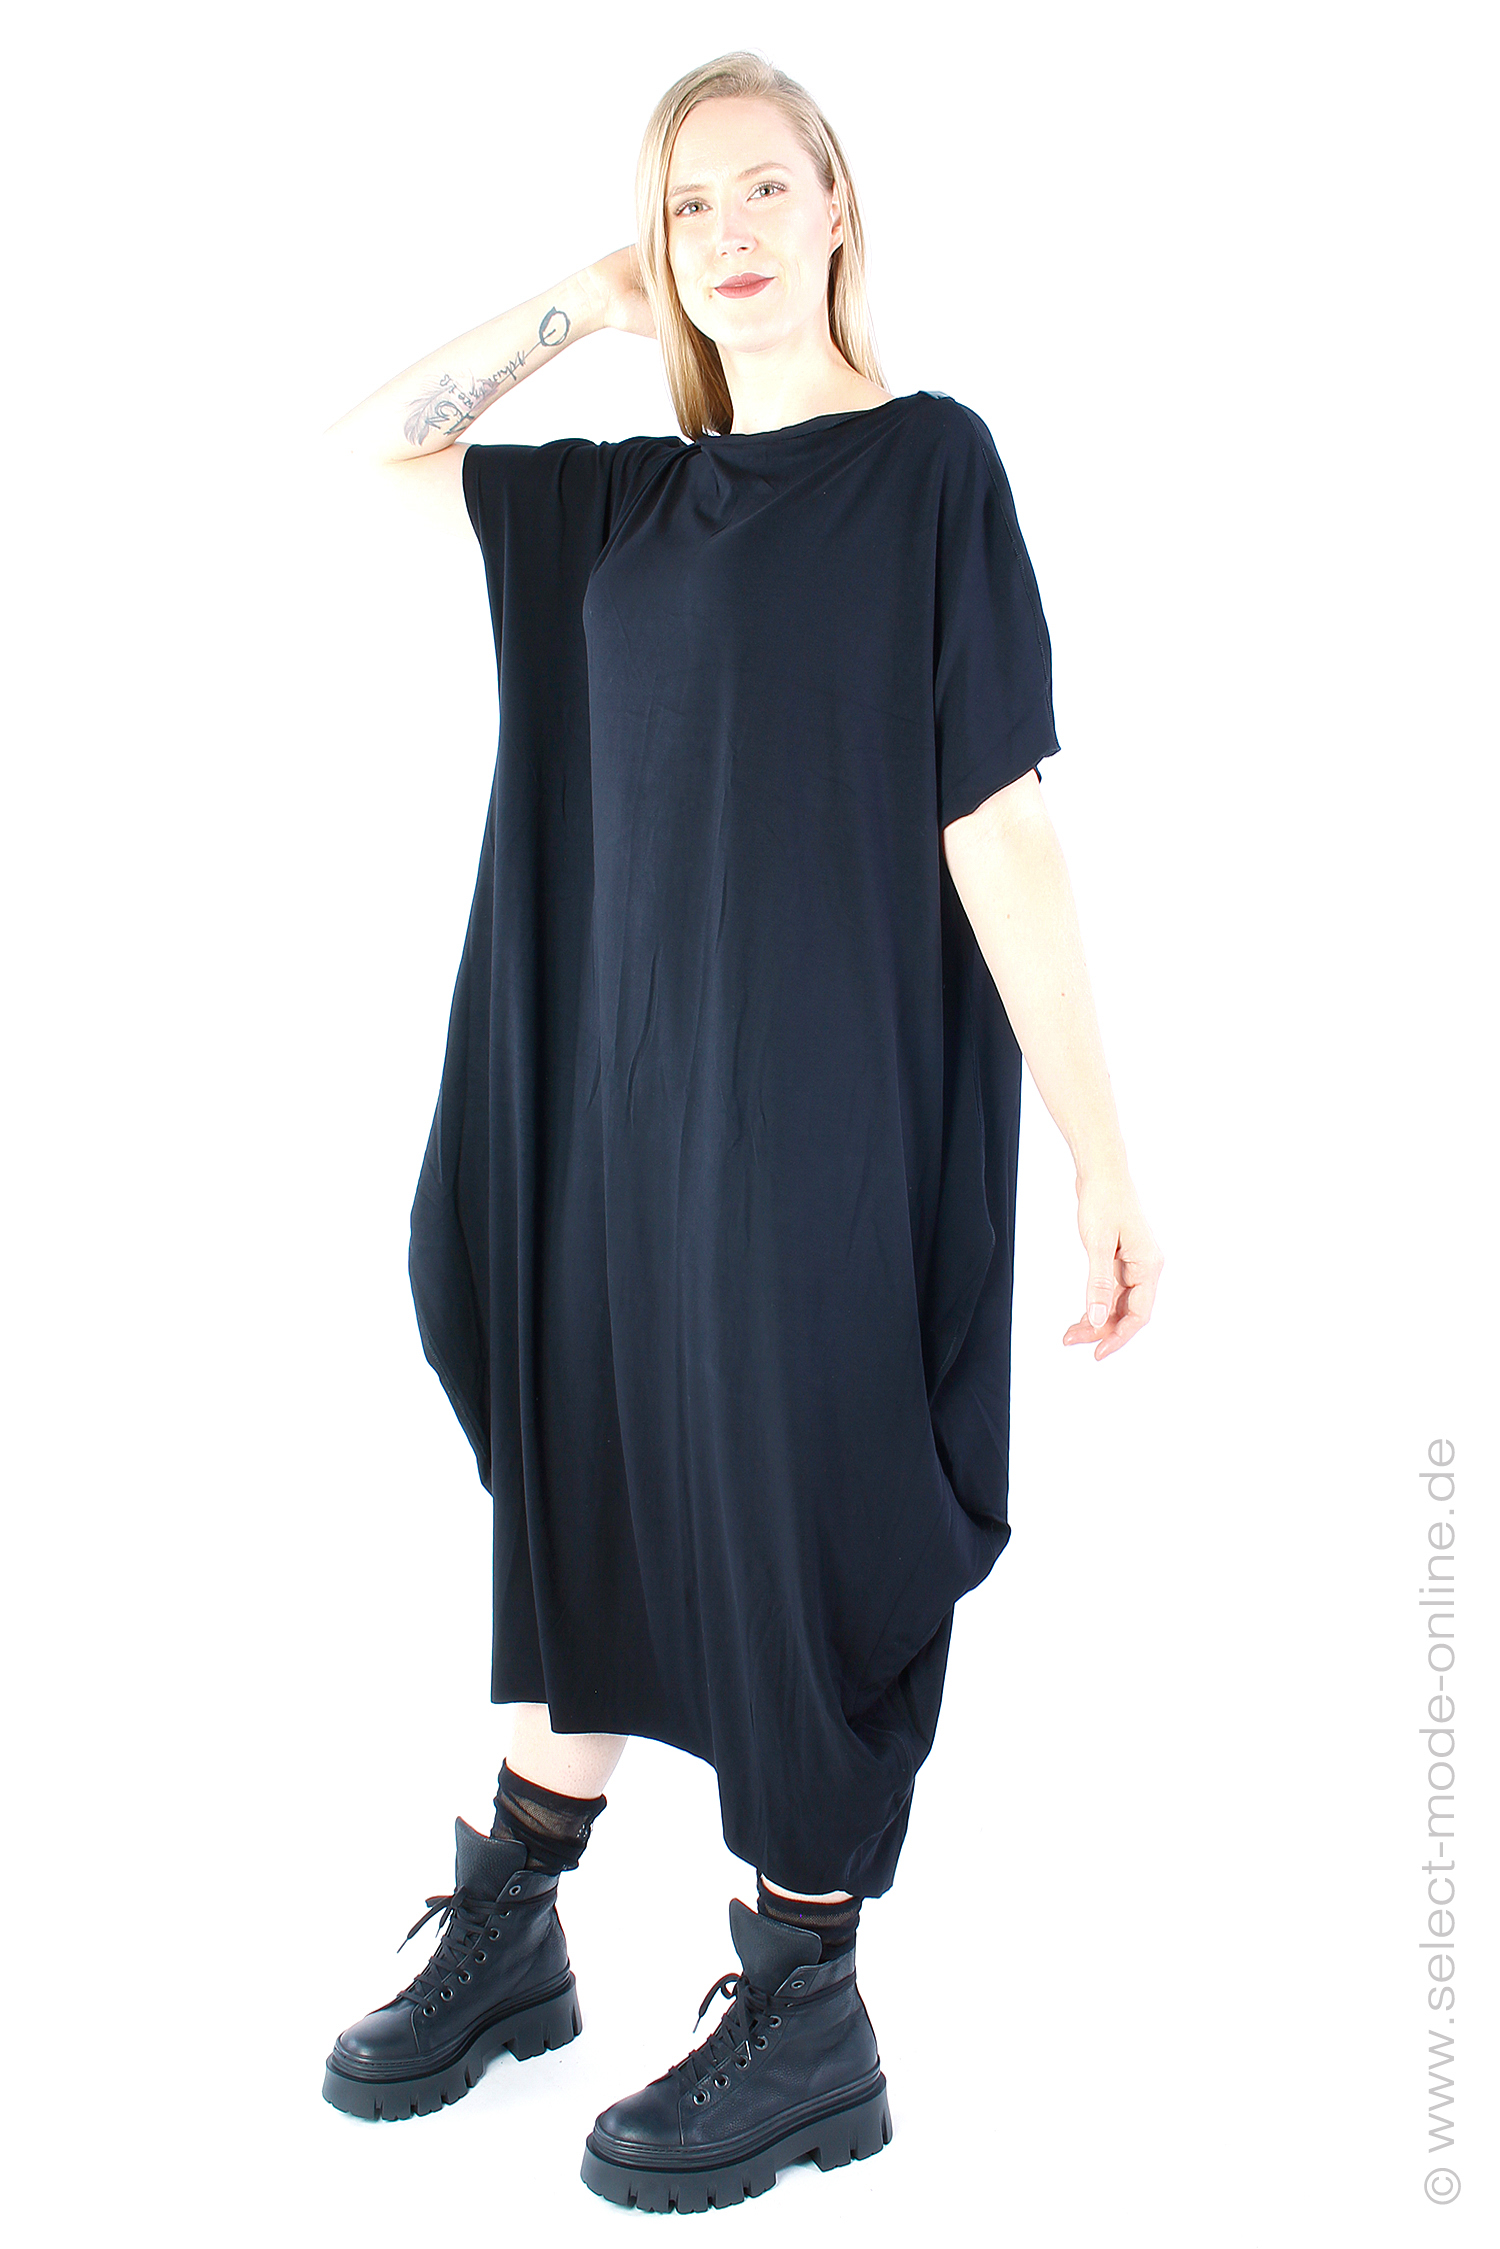 Tulpiges Jerseykleid - schwarz - 1220